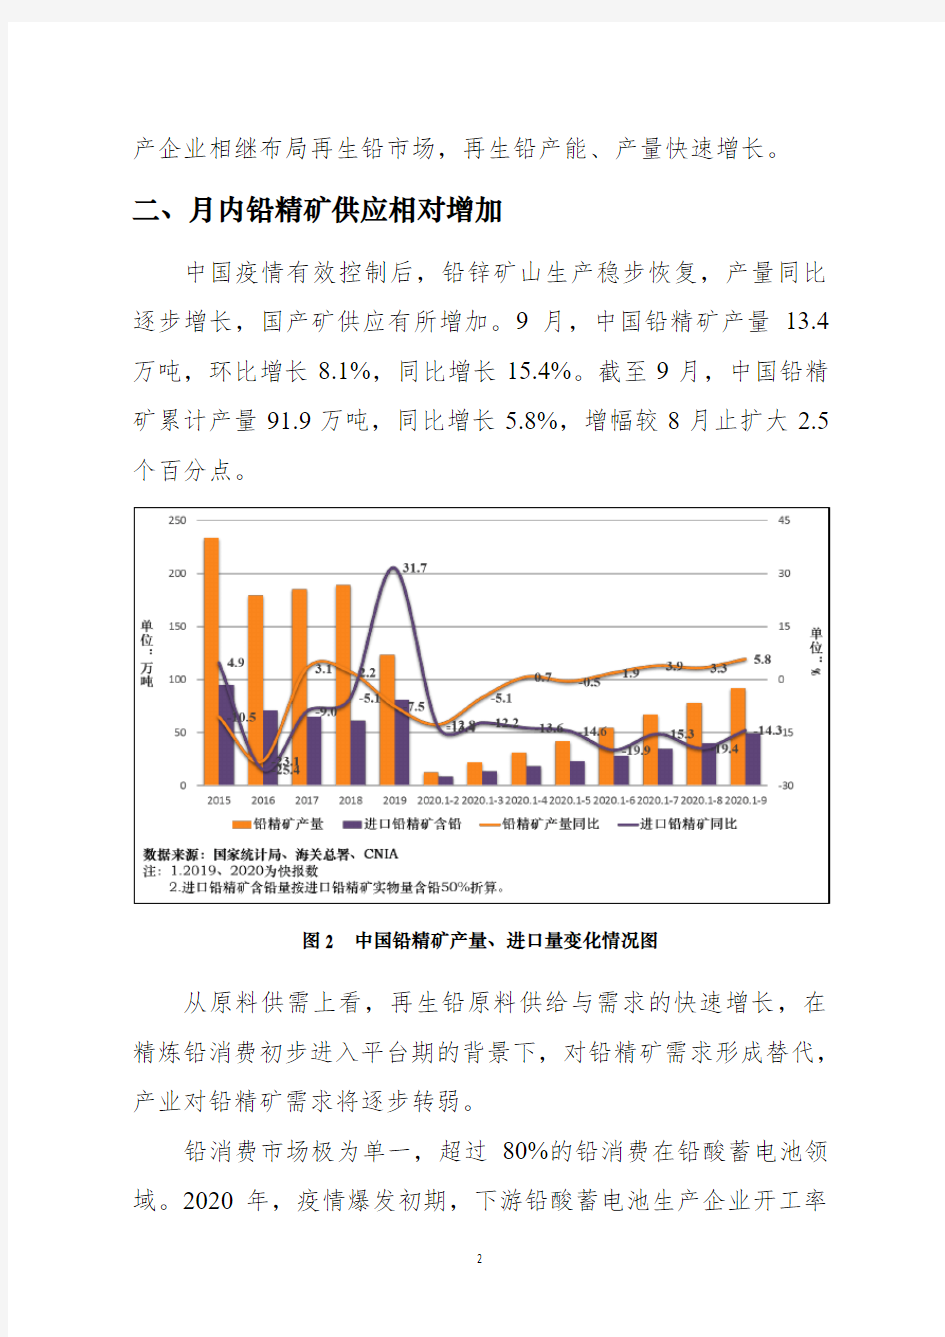 2020年10月中国铅产业运行情况与发展趋势